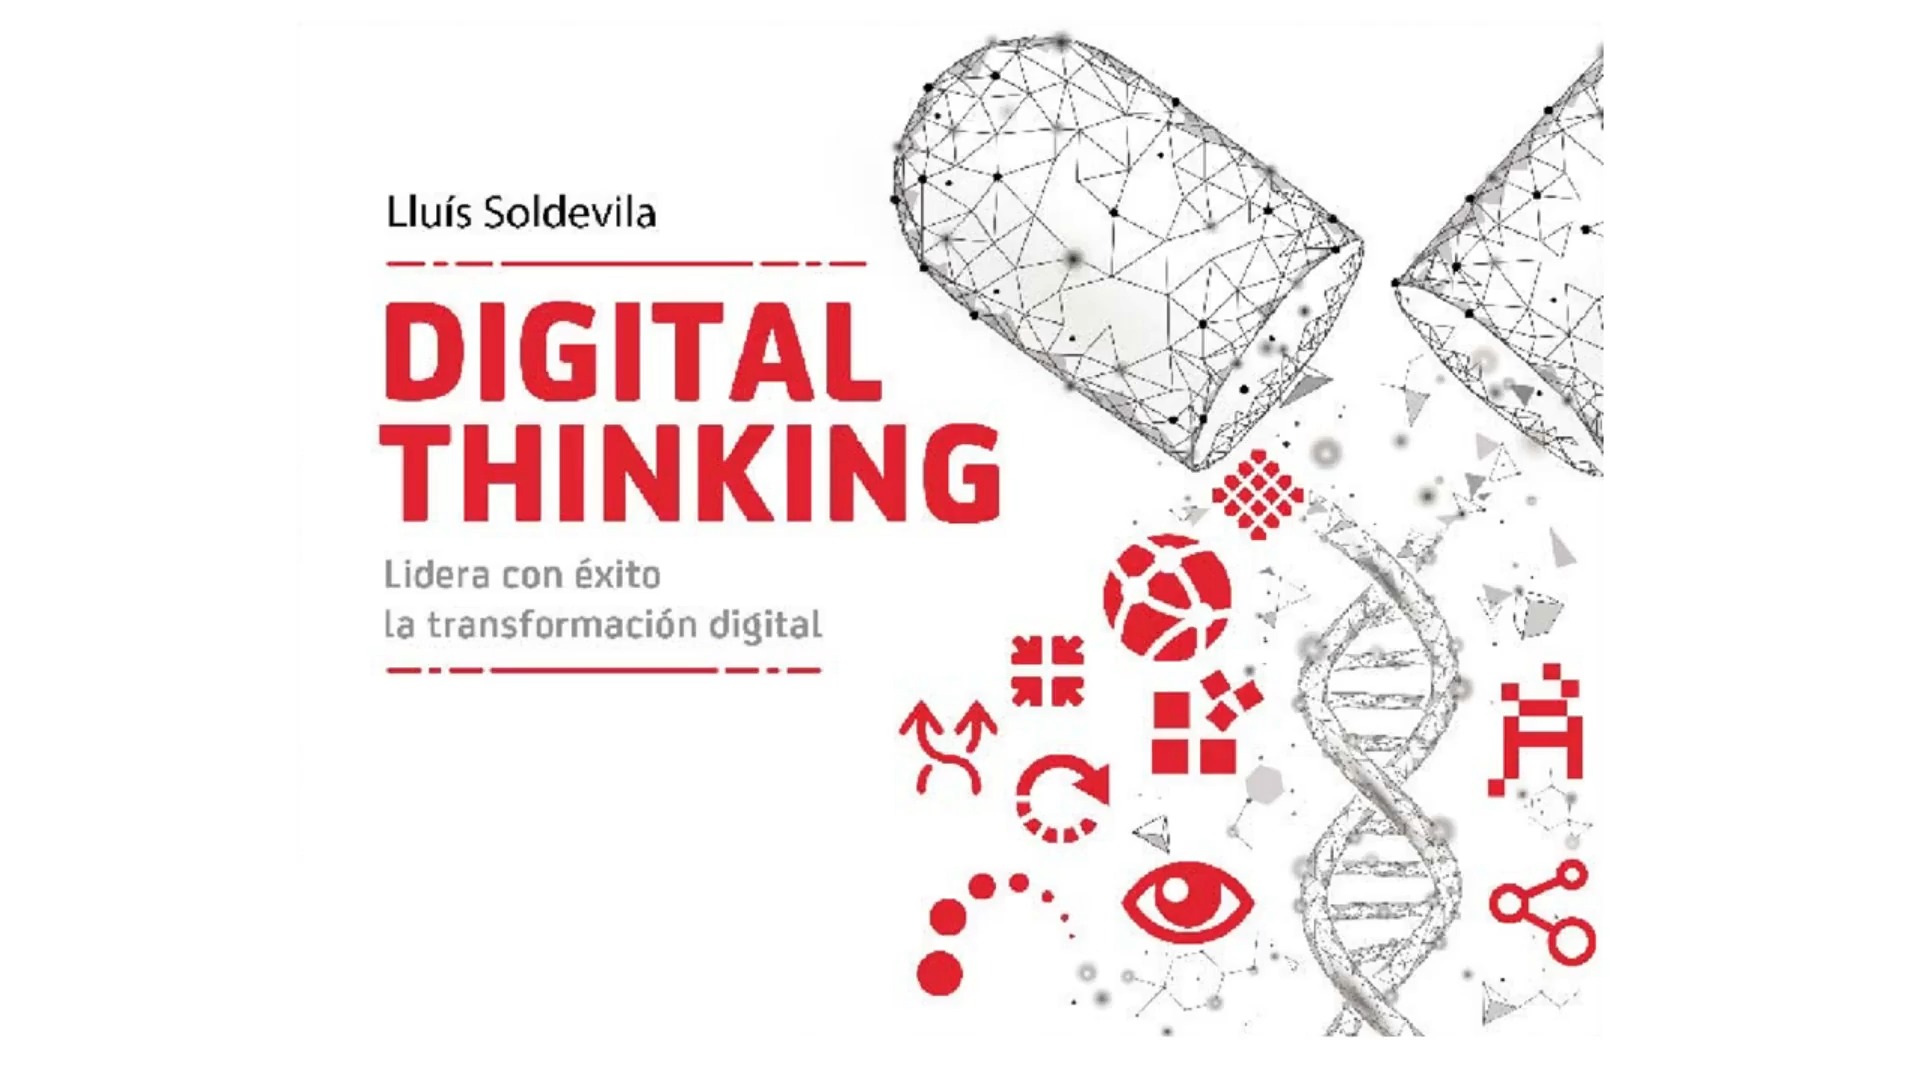 Digital thinking: lidera con éxito la tranformación digital